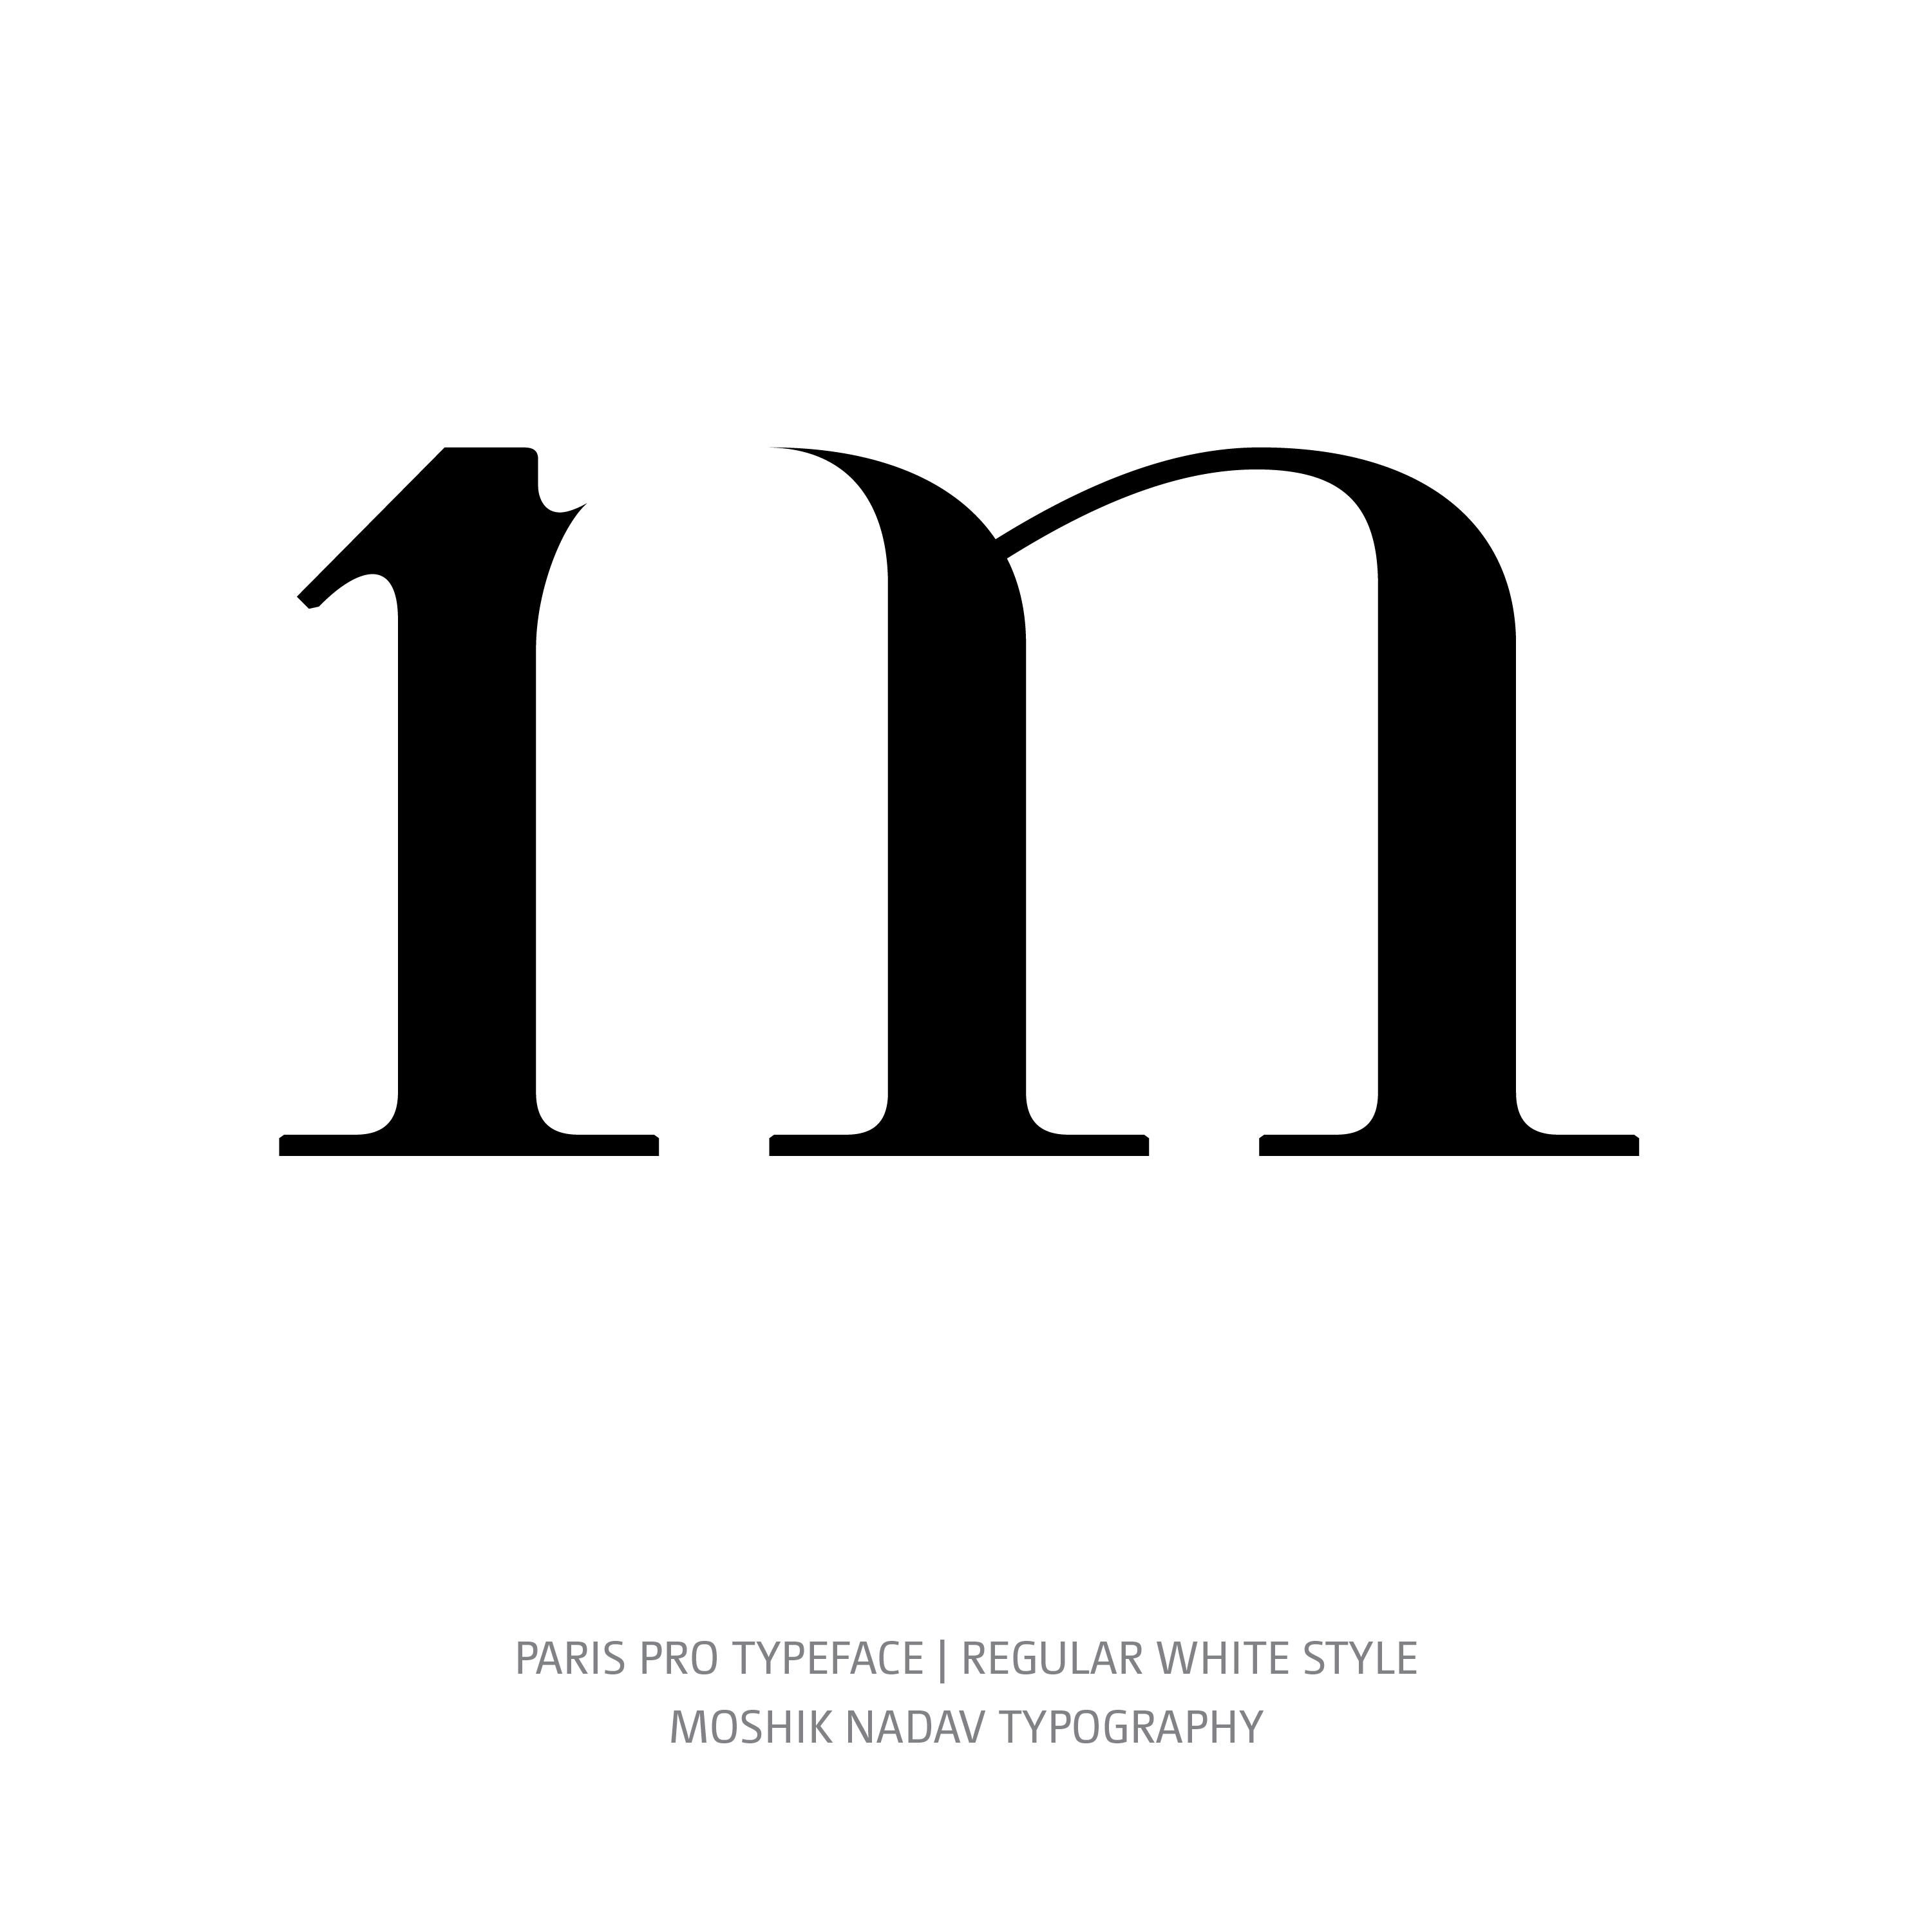 Paris Pro Typeface Regular White m